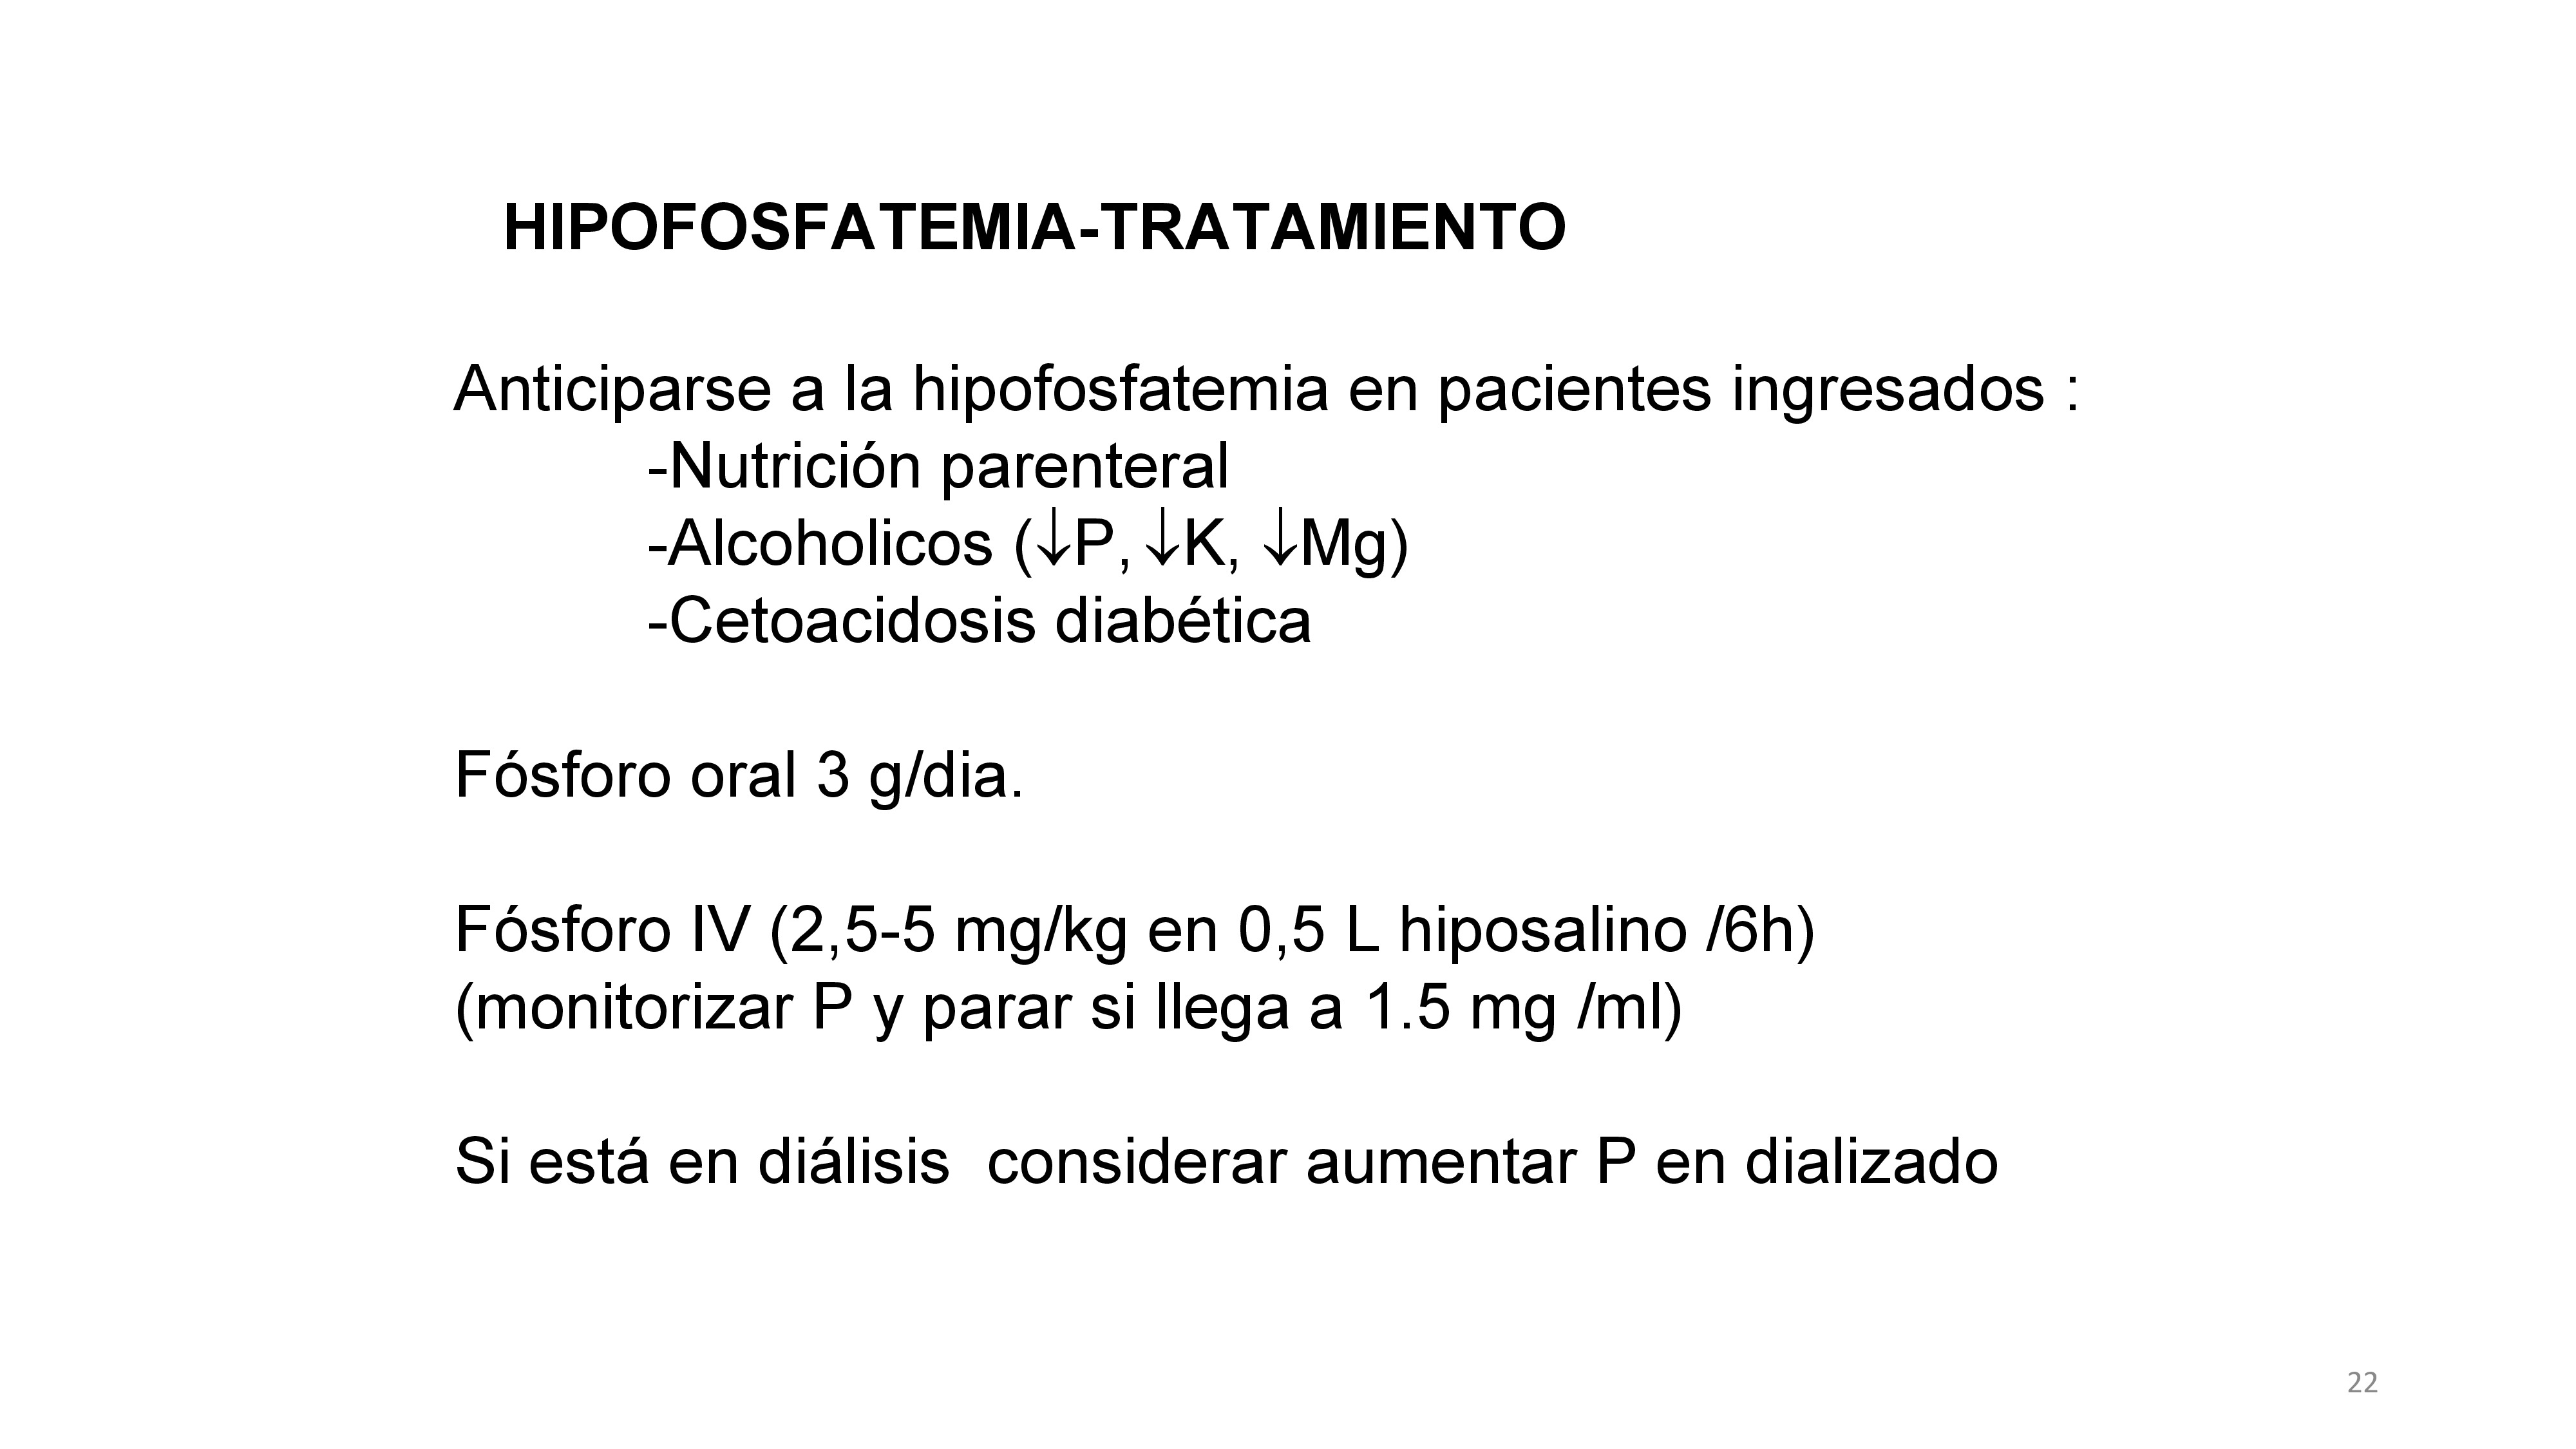 Prevenir hipofosfatemia en pacientes que vayan a recibir nutrición parenteral (300 mg de fosfato por cada 1.000 Kcal), monitorizar los niveles de P en alcohólicos y en aquellos con cetoacidosis diabética.La dosis inicial debe ser 3 gramos/dia repartido en 3-4 dosis.Si la hipofosforemia es severa (